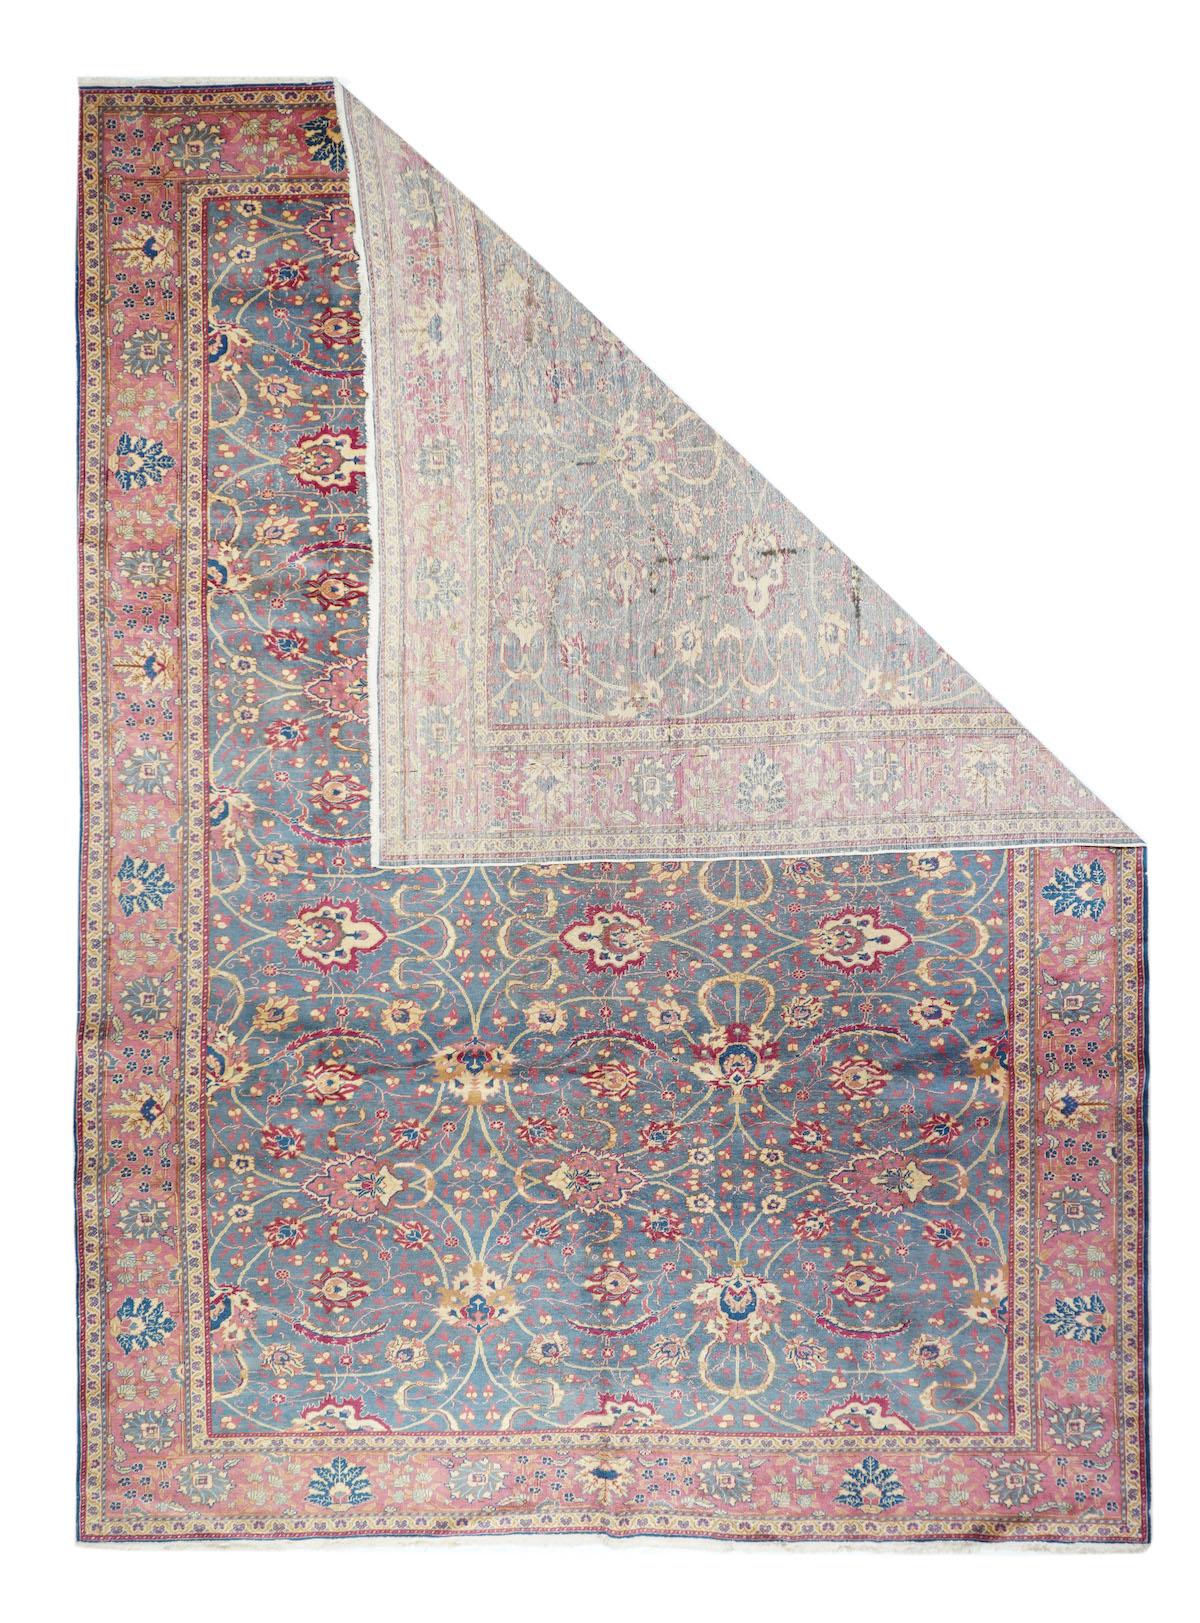 Antique Turkish rug 8'9'' x 11'.